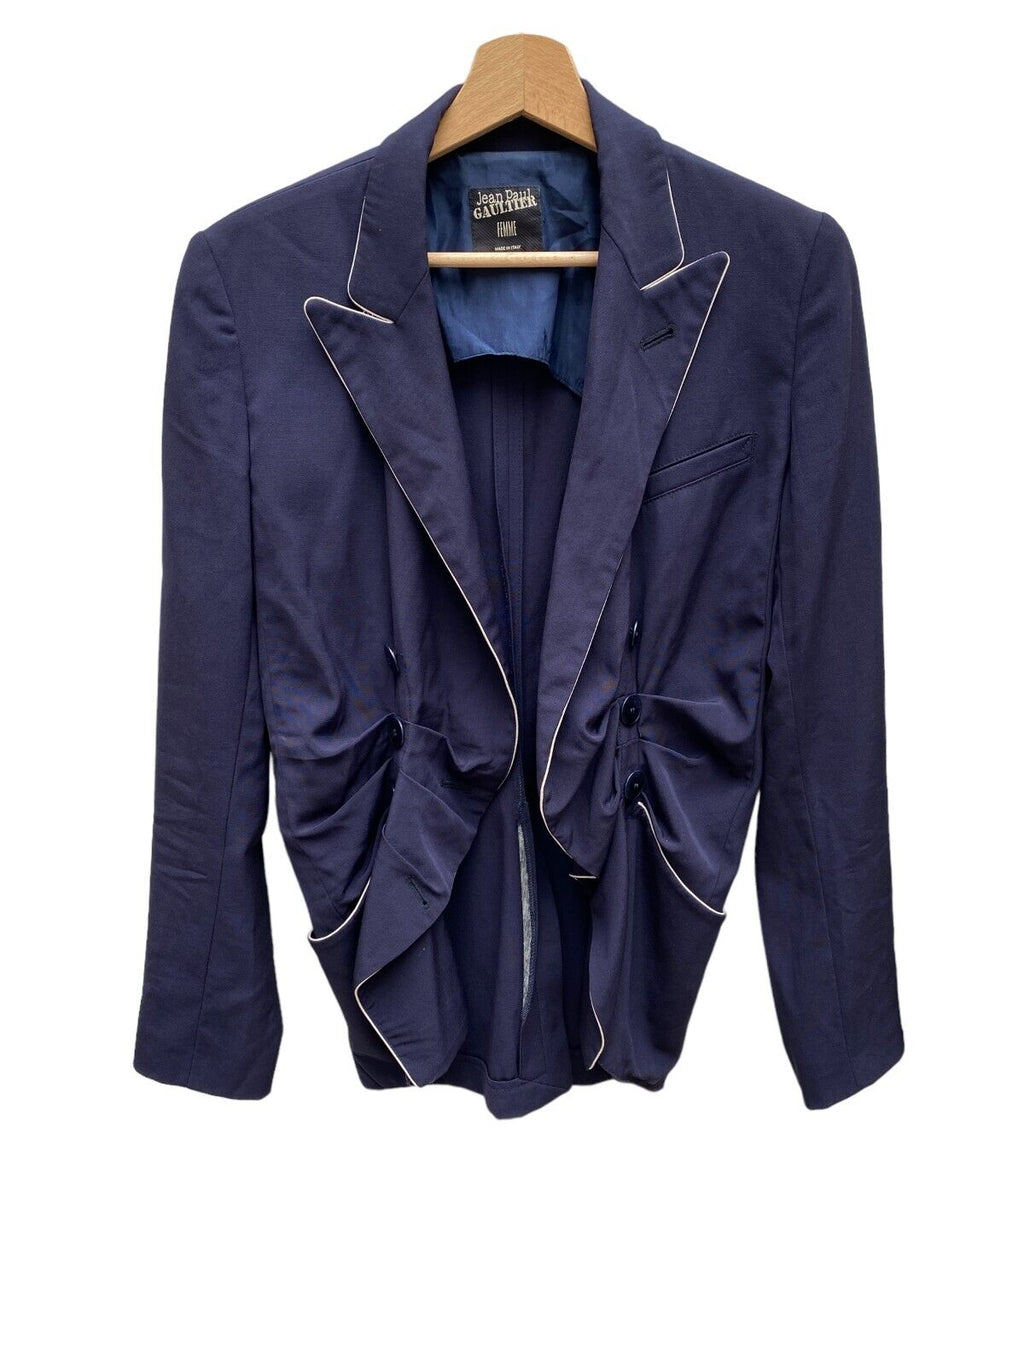 Jean Paul Gaultier  Vintage Navy Corset Bustier Blazer Jacket  Size IT 40 FR 36